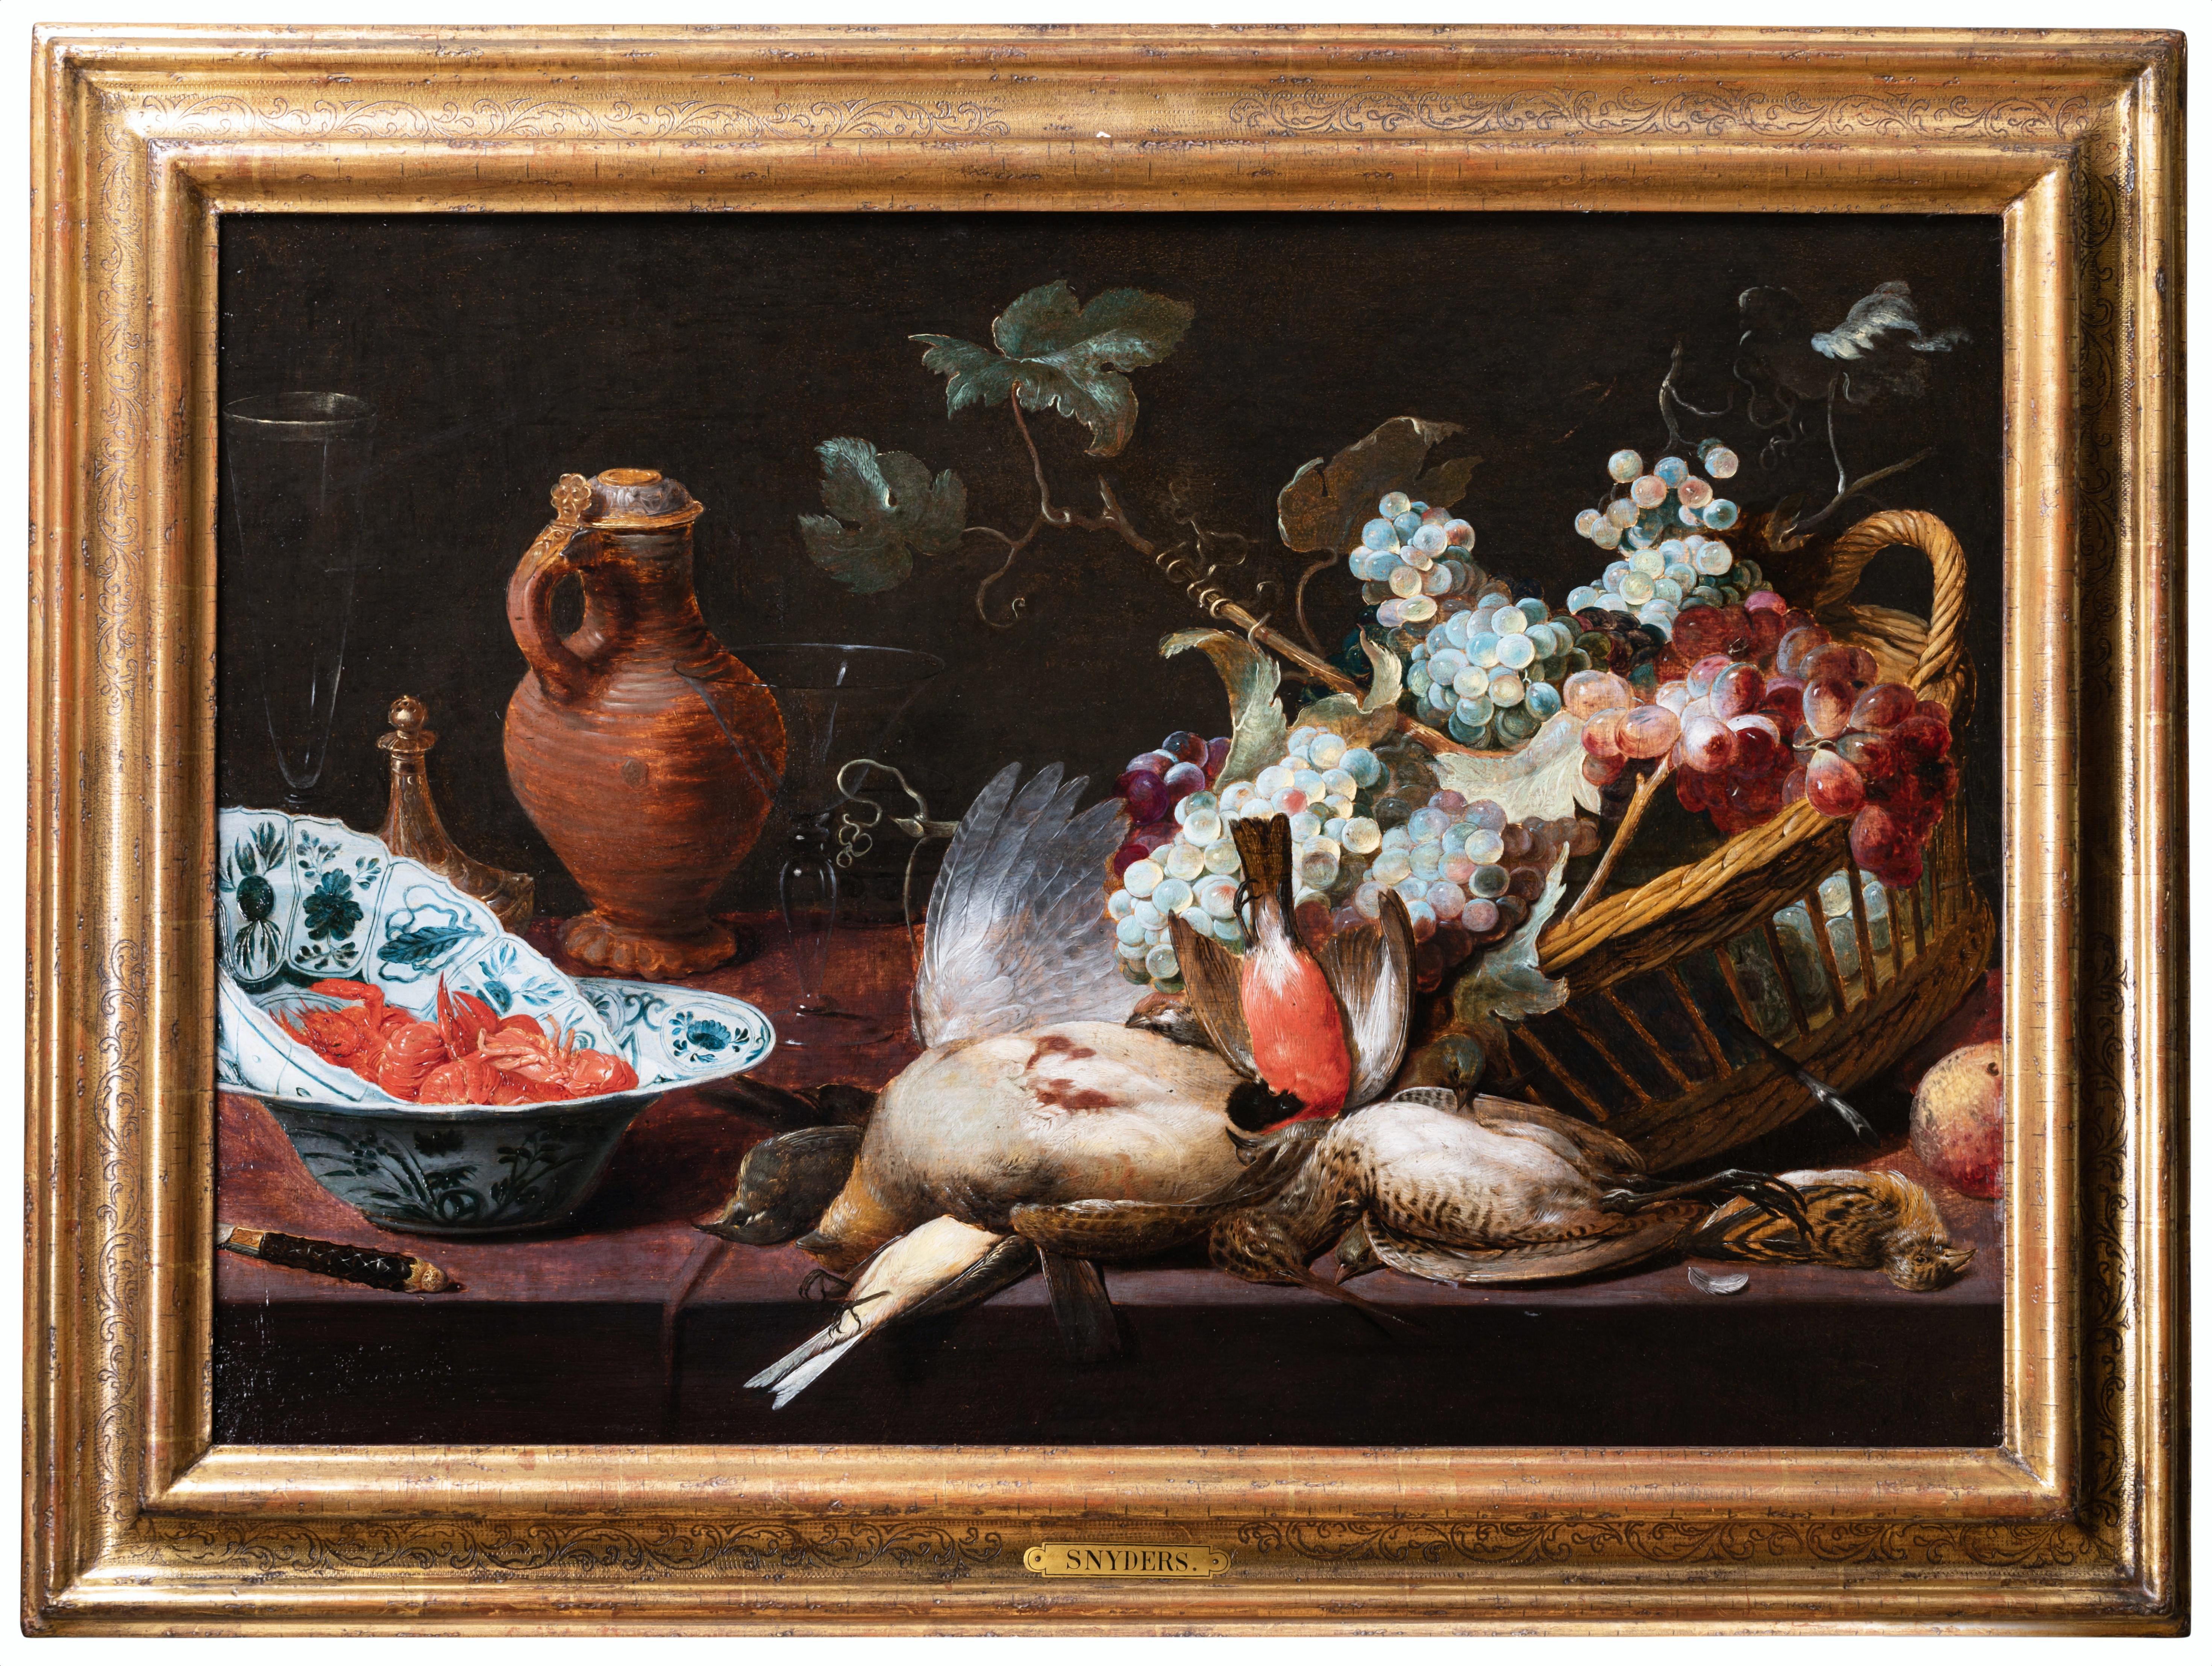 17e s. Nature morte flamande avec oiseaux et raisins, atelier de Frans Snyders 